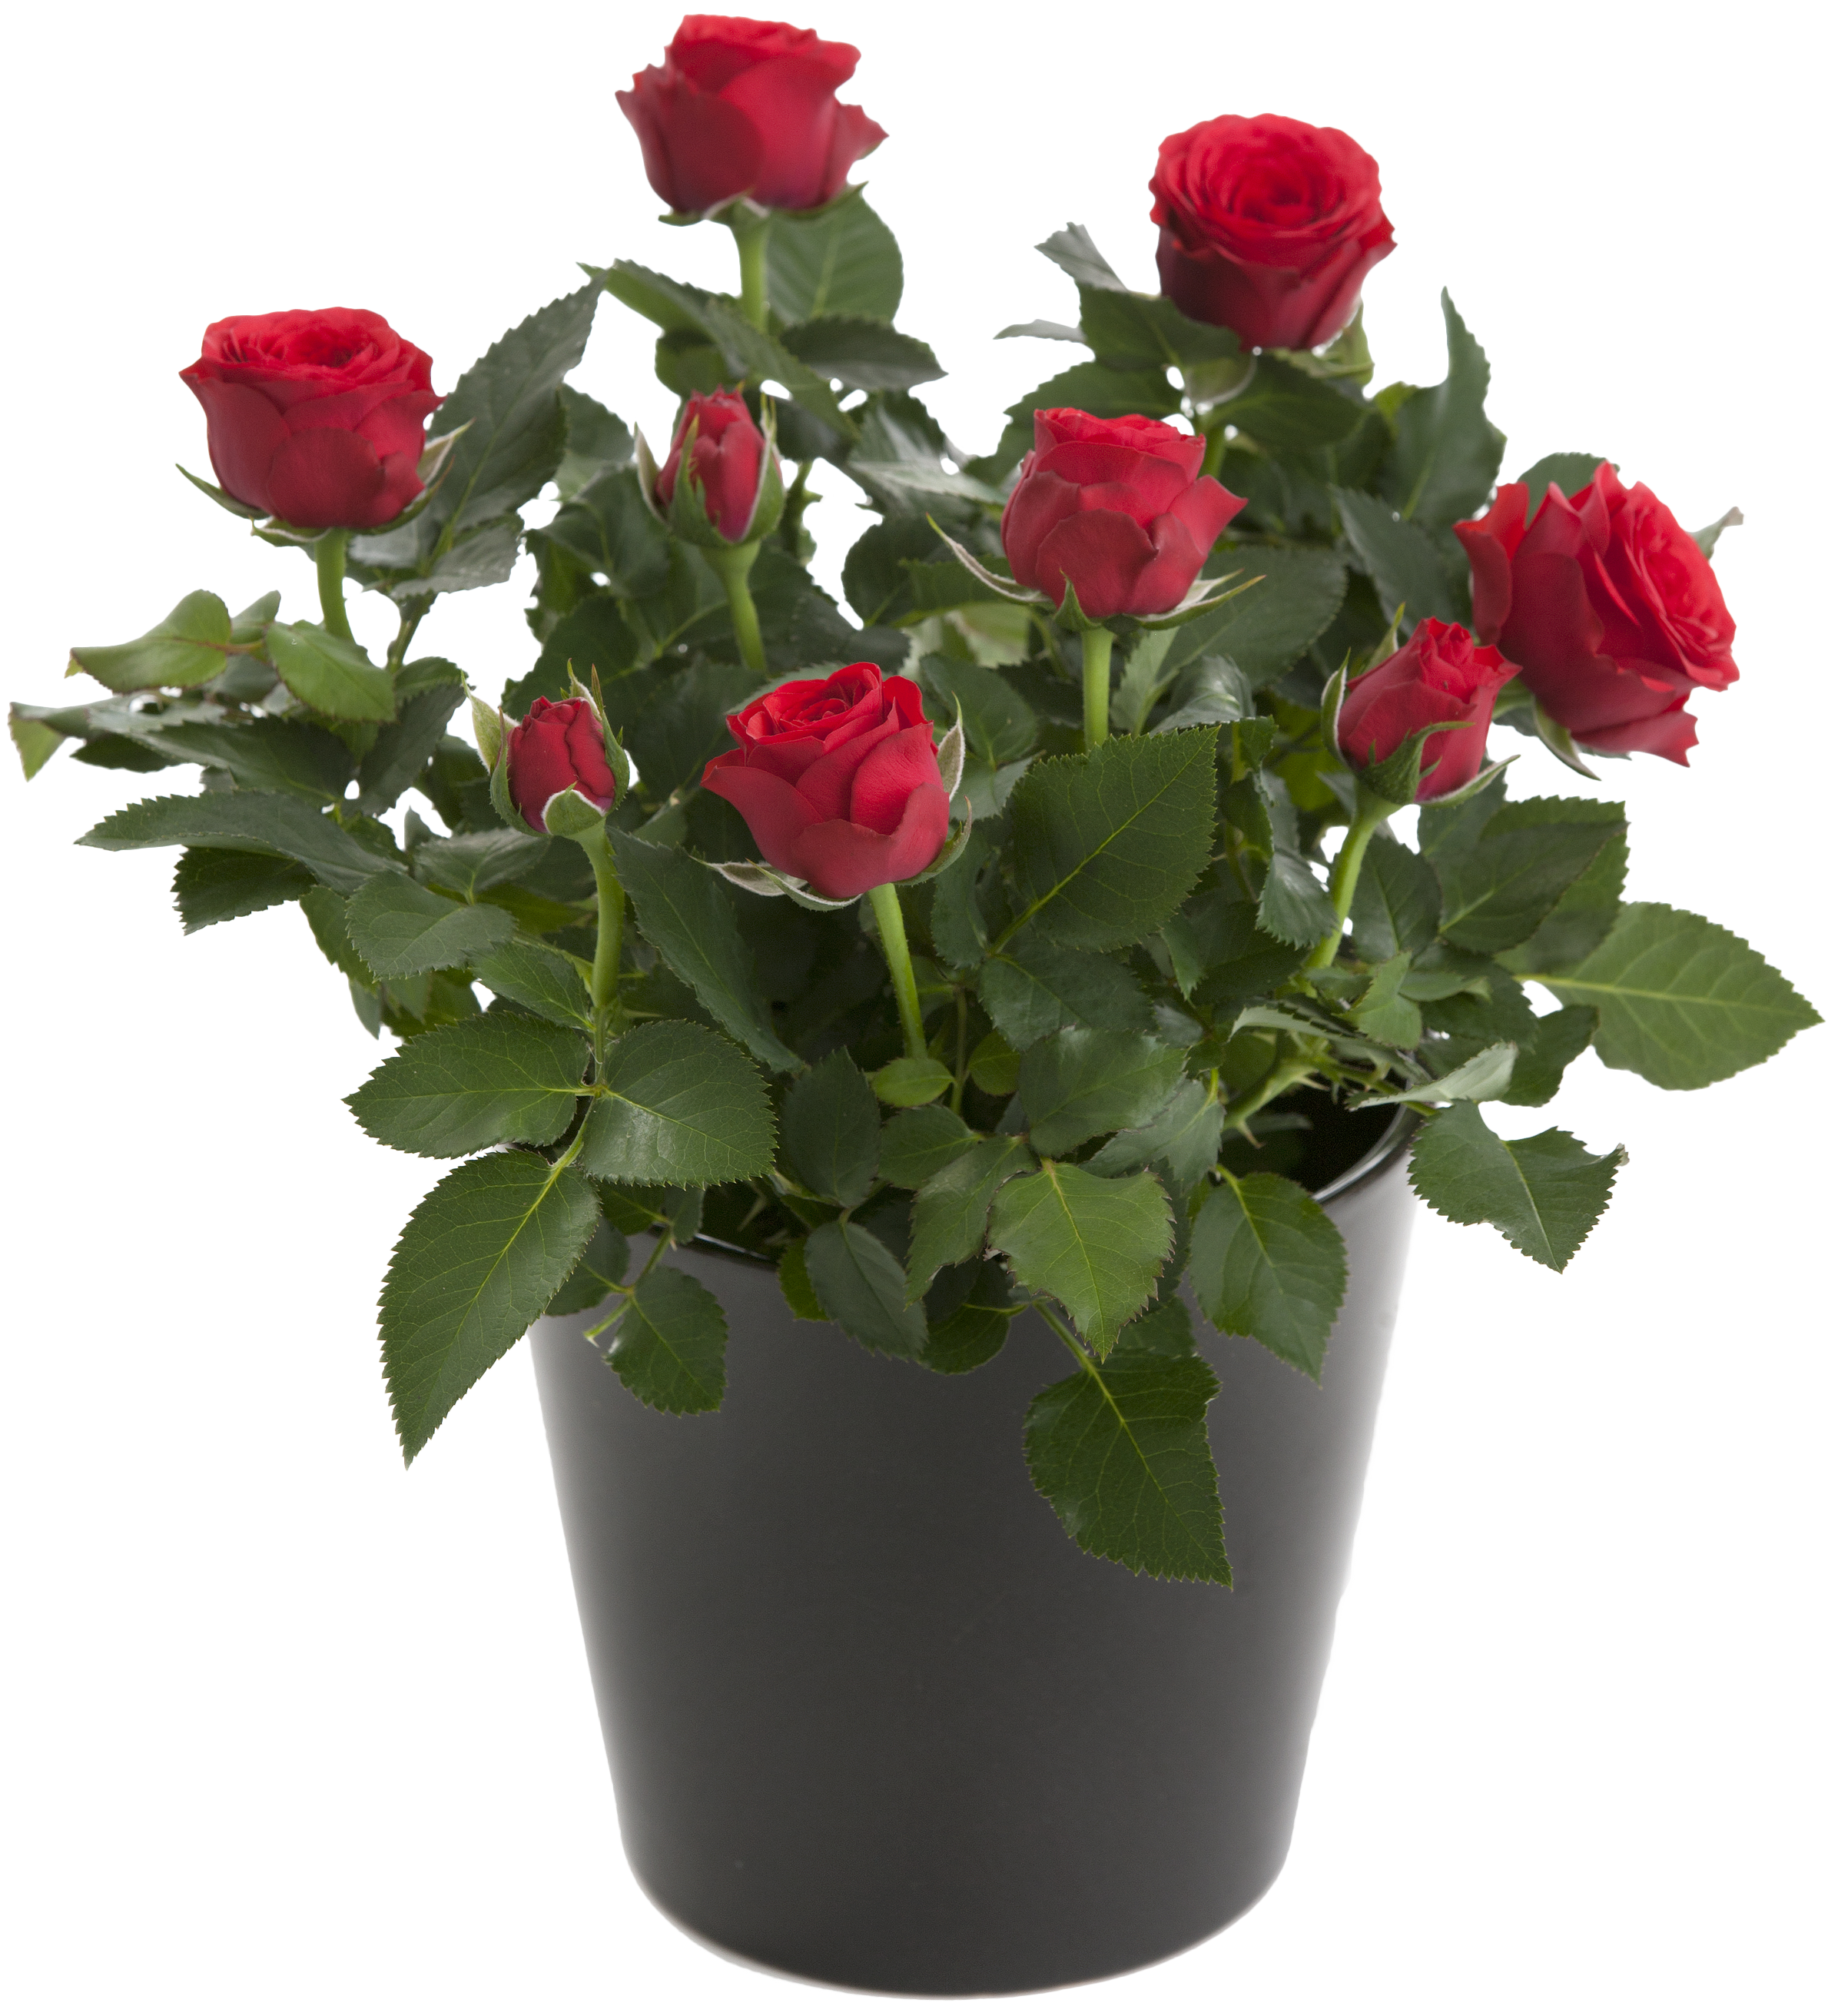 Как пересадить комнатную розу в другой горшок после покупки цветка или его разрастания, а также как правильно ухаживать за домашней культурой по окончании процедуры?